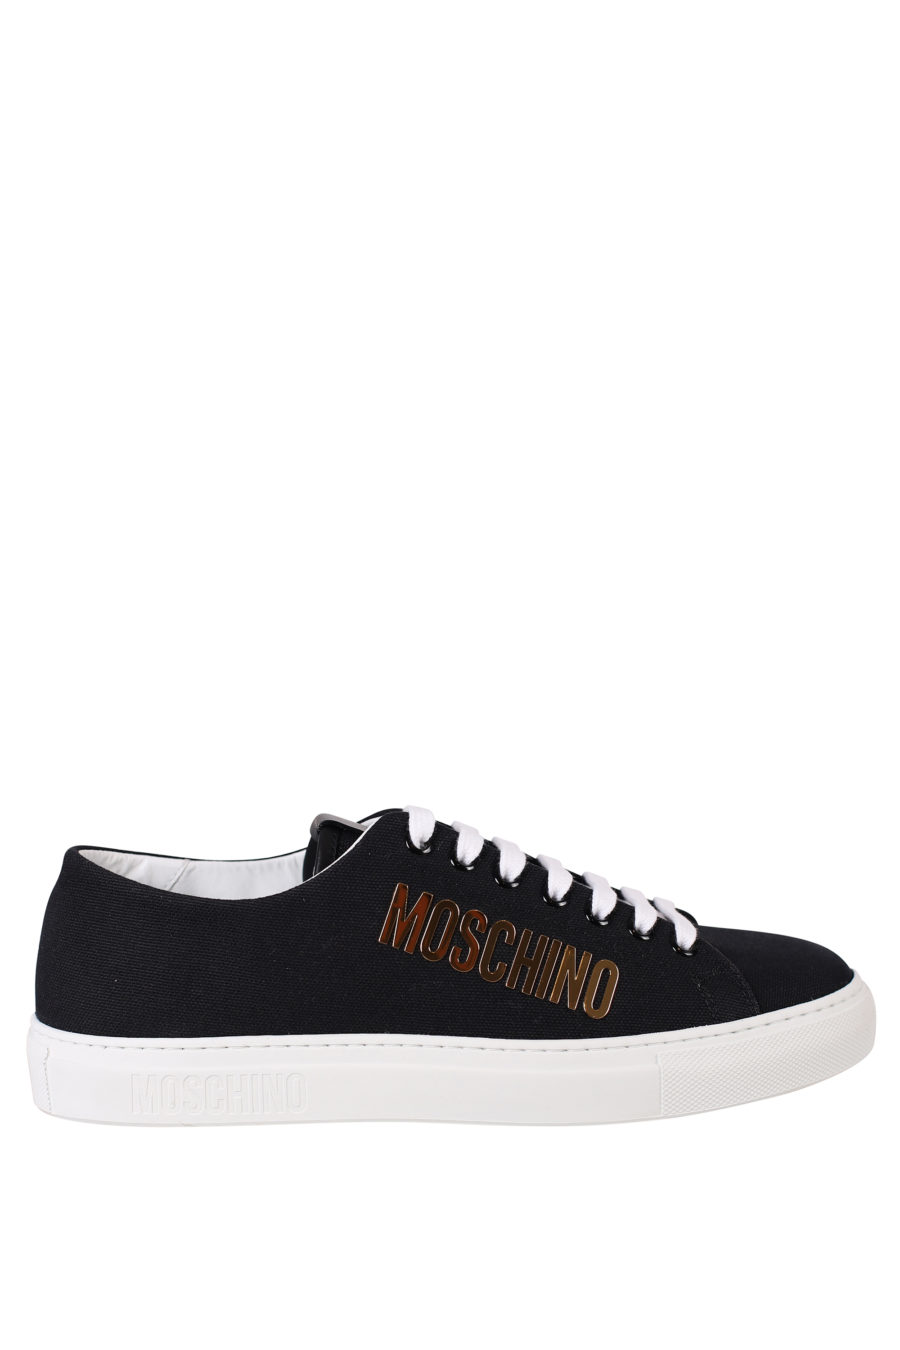 Zapatillas negras con suela blanca y logo oro - IMG 0370